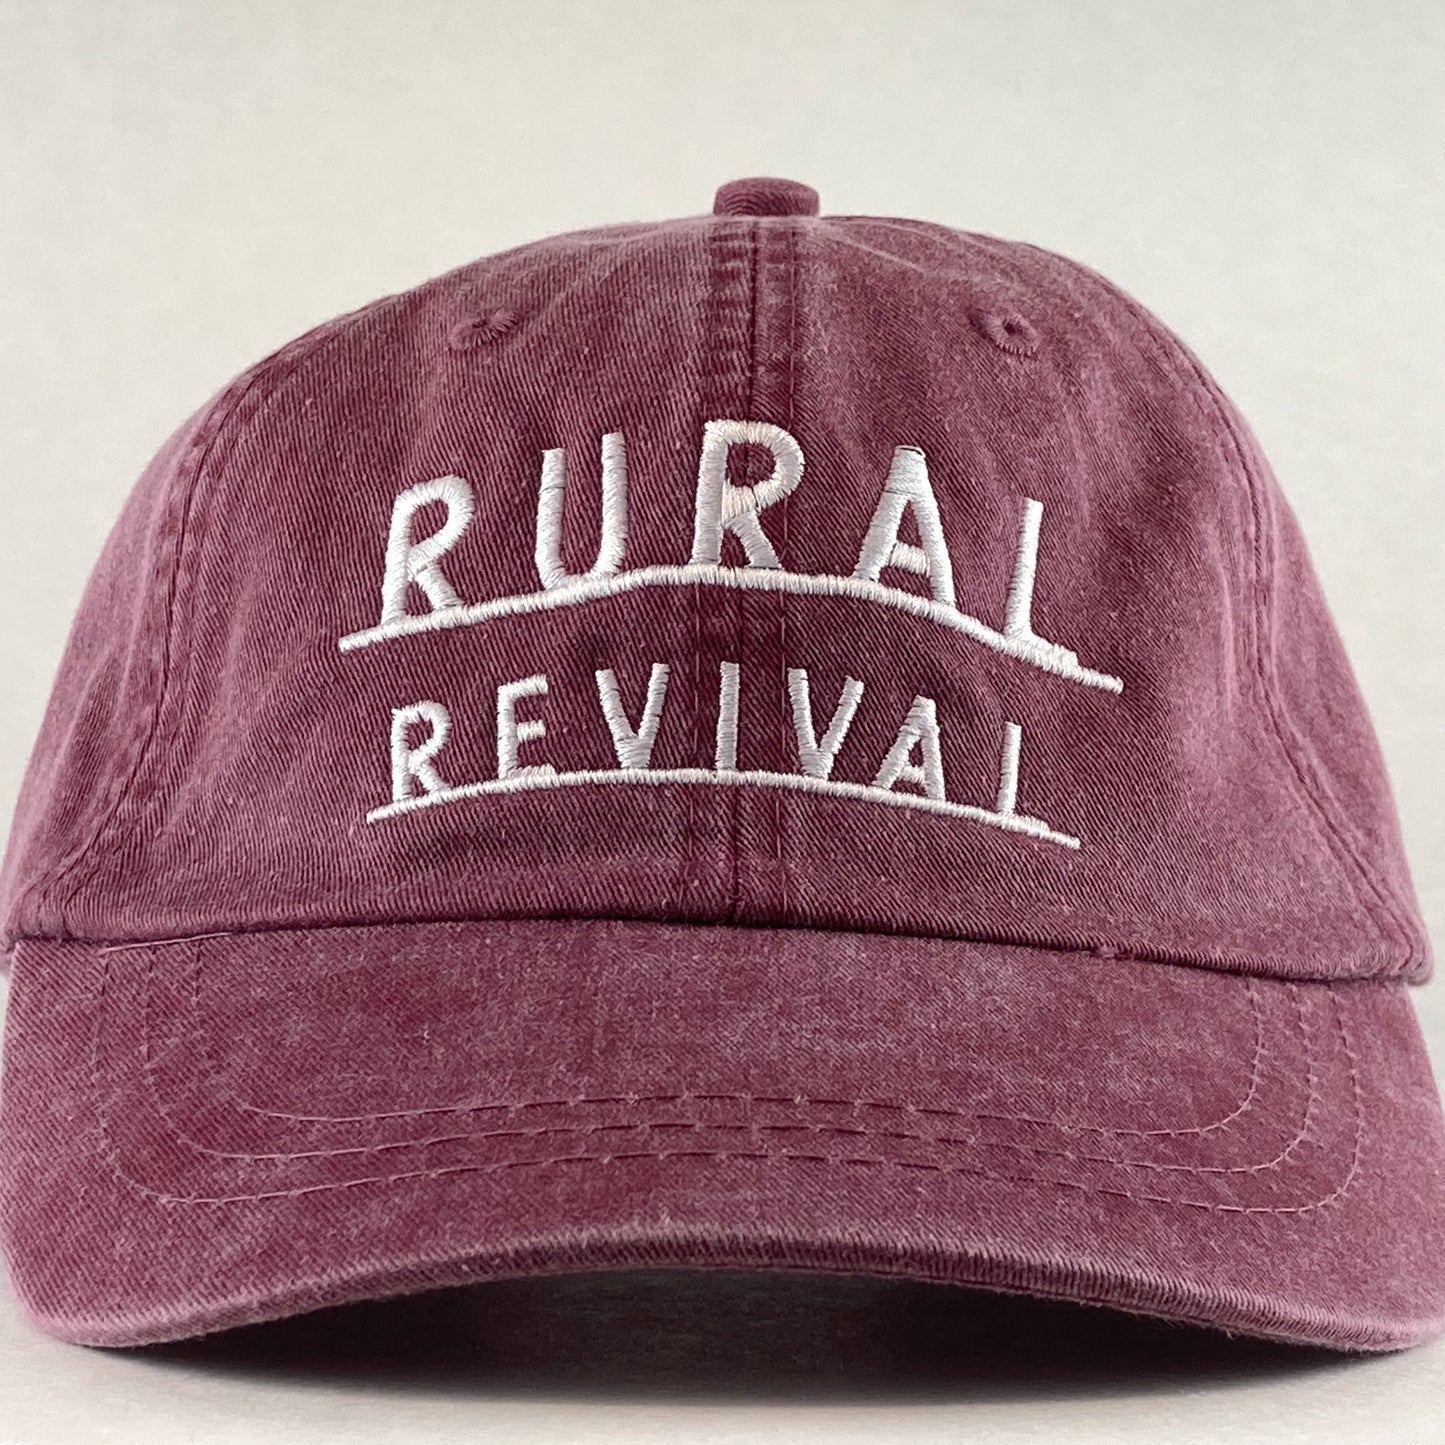 Rural Revival